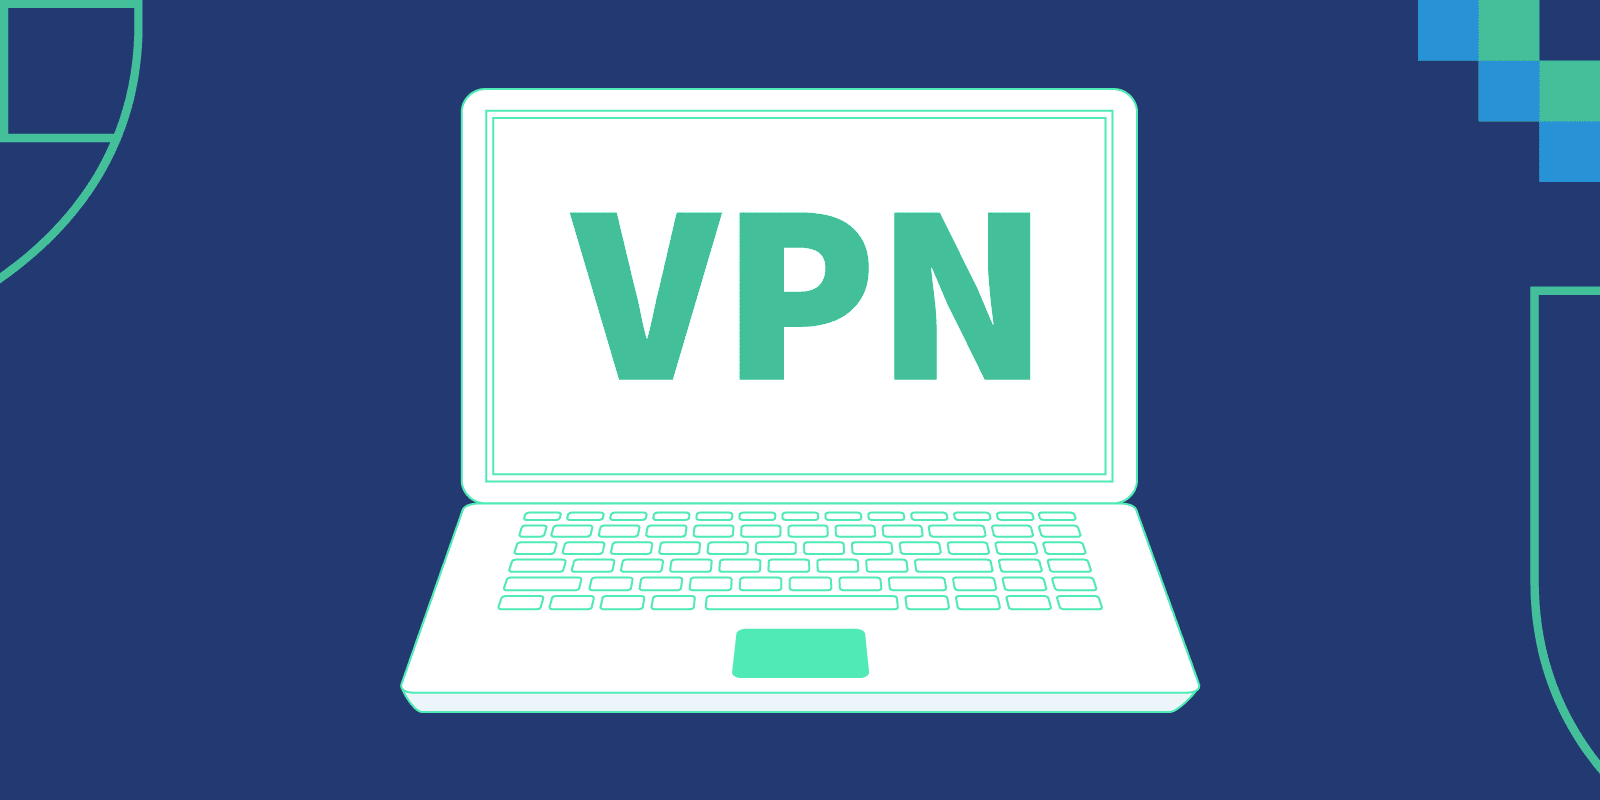 ضبط إعدادات VPN للاندرويد - كيفية استخدام VPN أندرويد